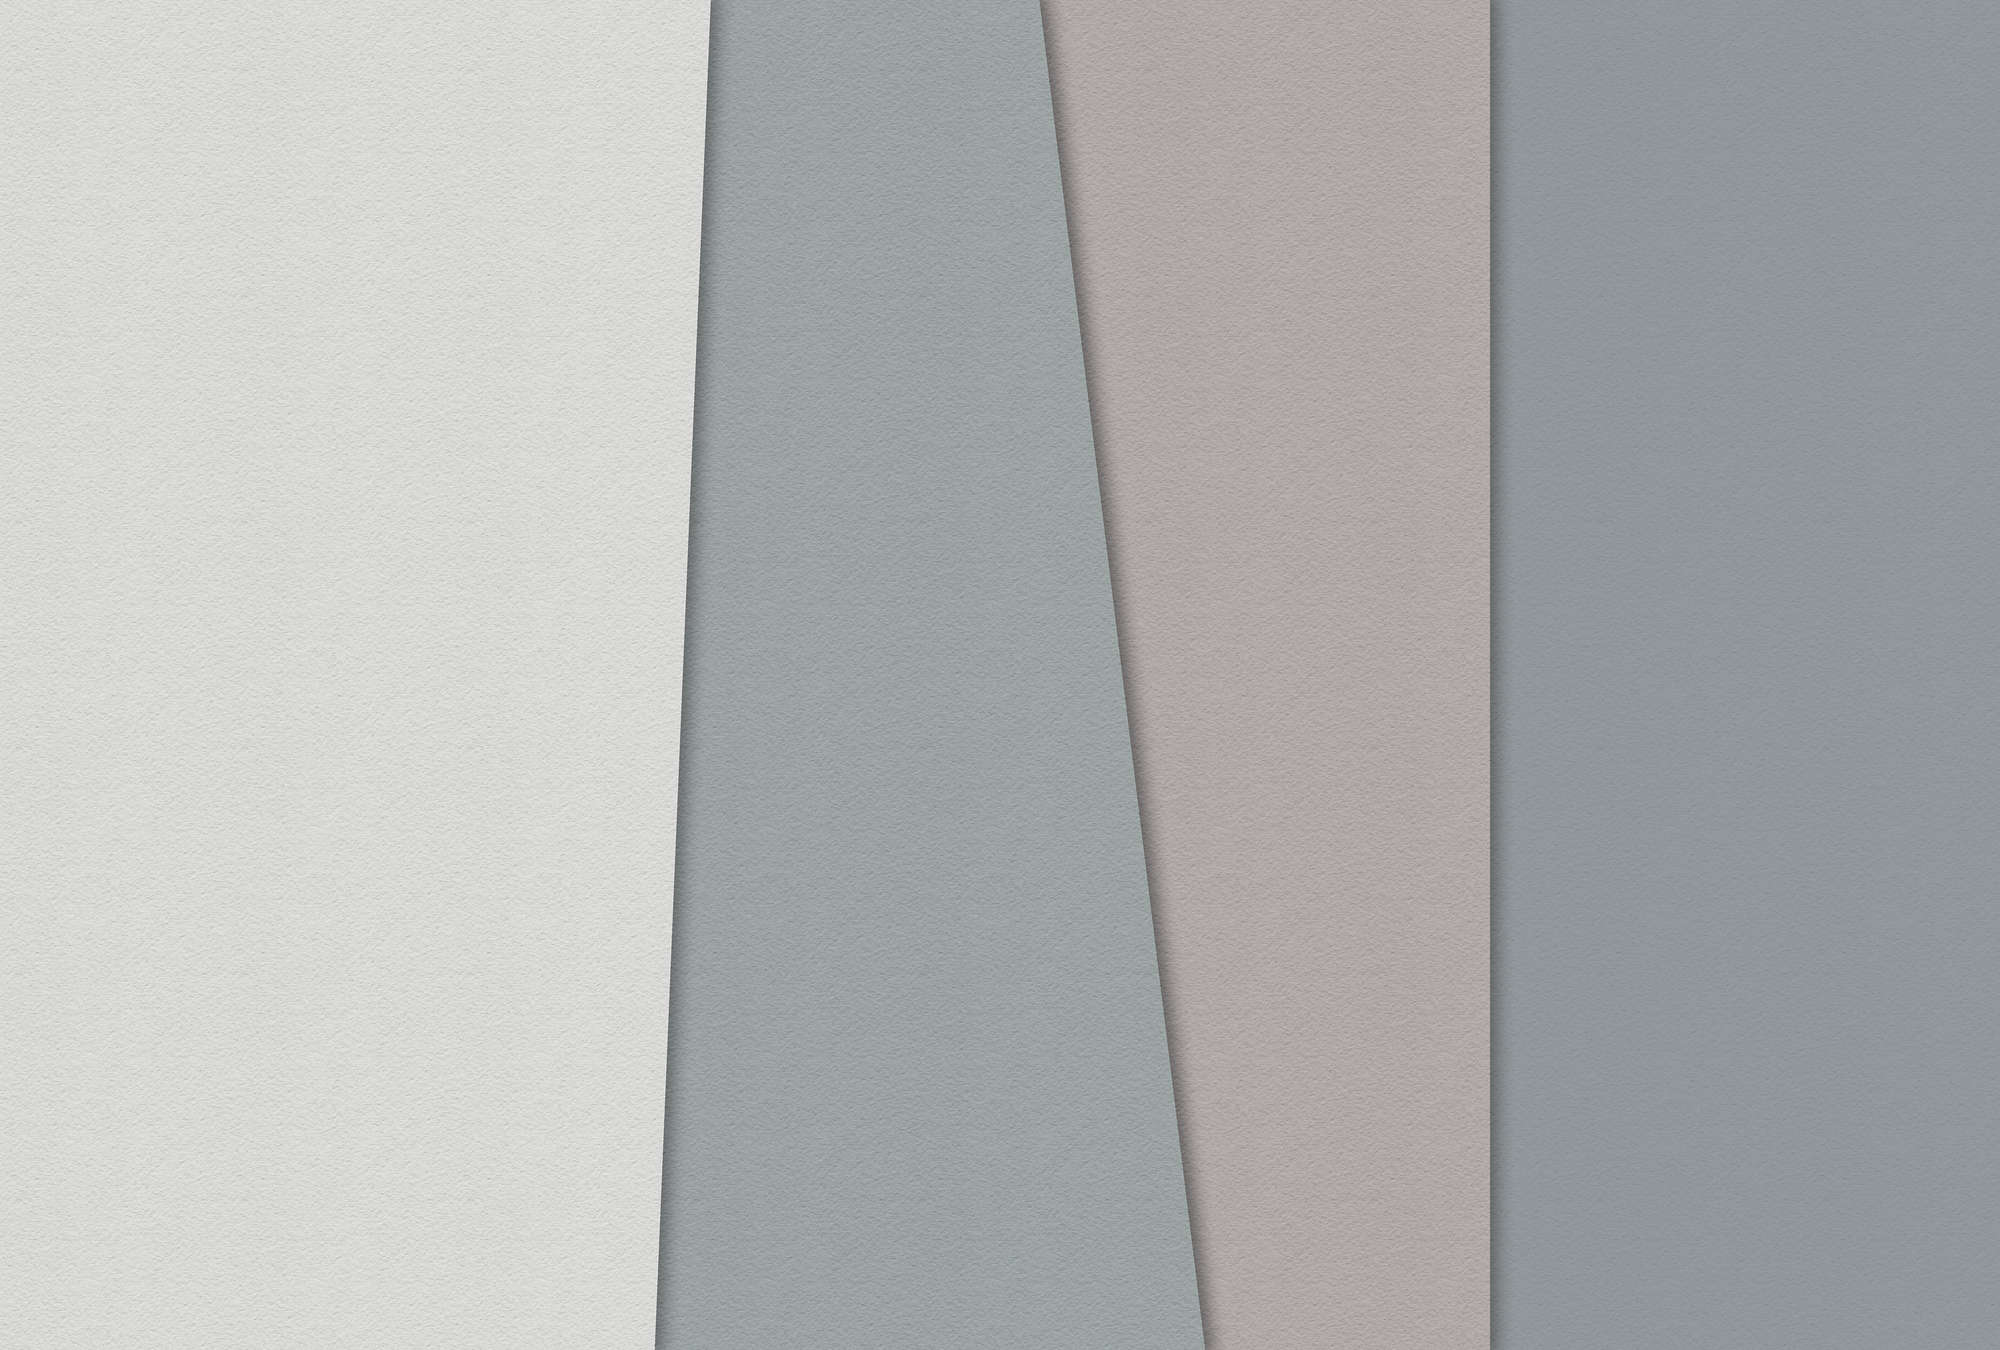             Carta stratificata 1 - Carta da parati grafica con aree colorate in struttura di carta fatta a mano - Blu, Crema | Vello liscio opaco
        